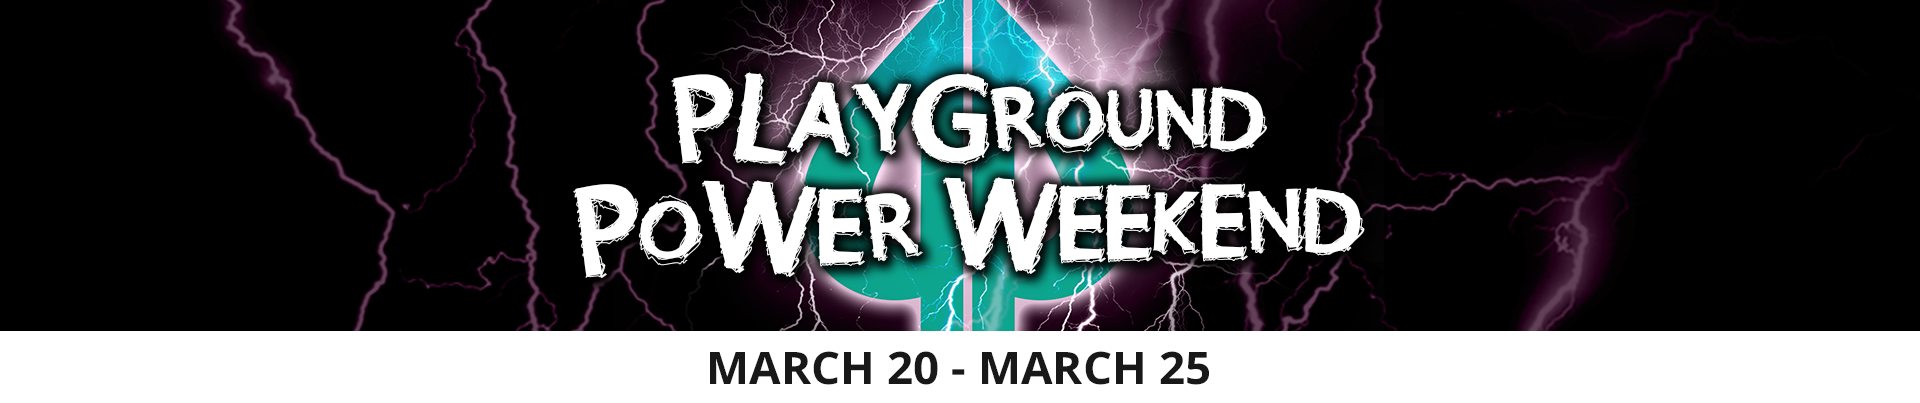 Playground Power Weekend March 2019